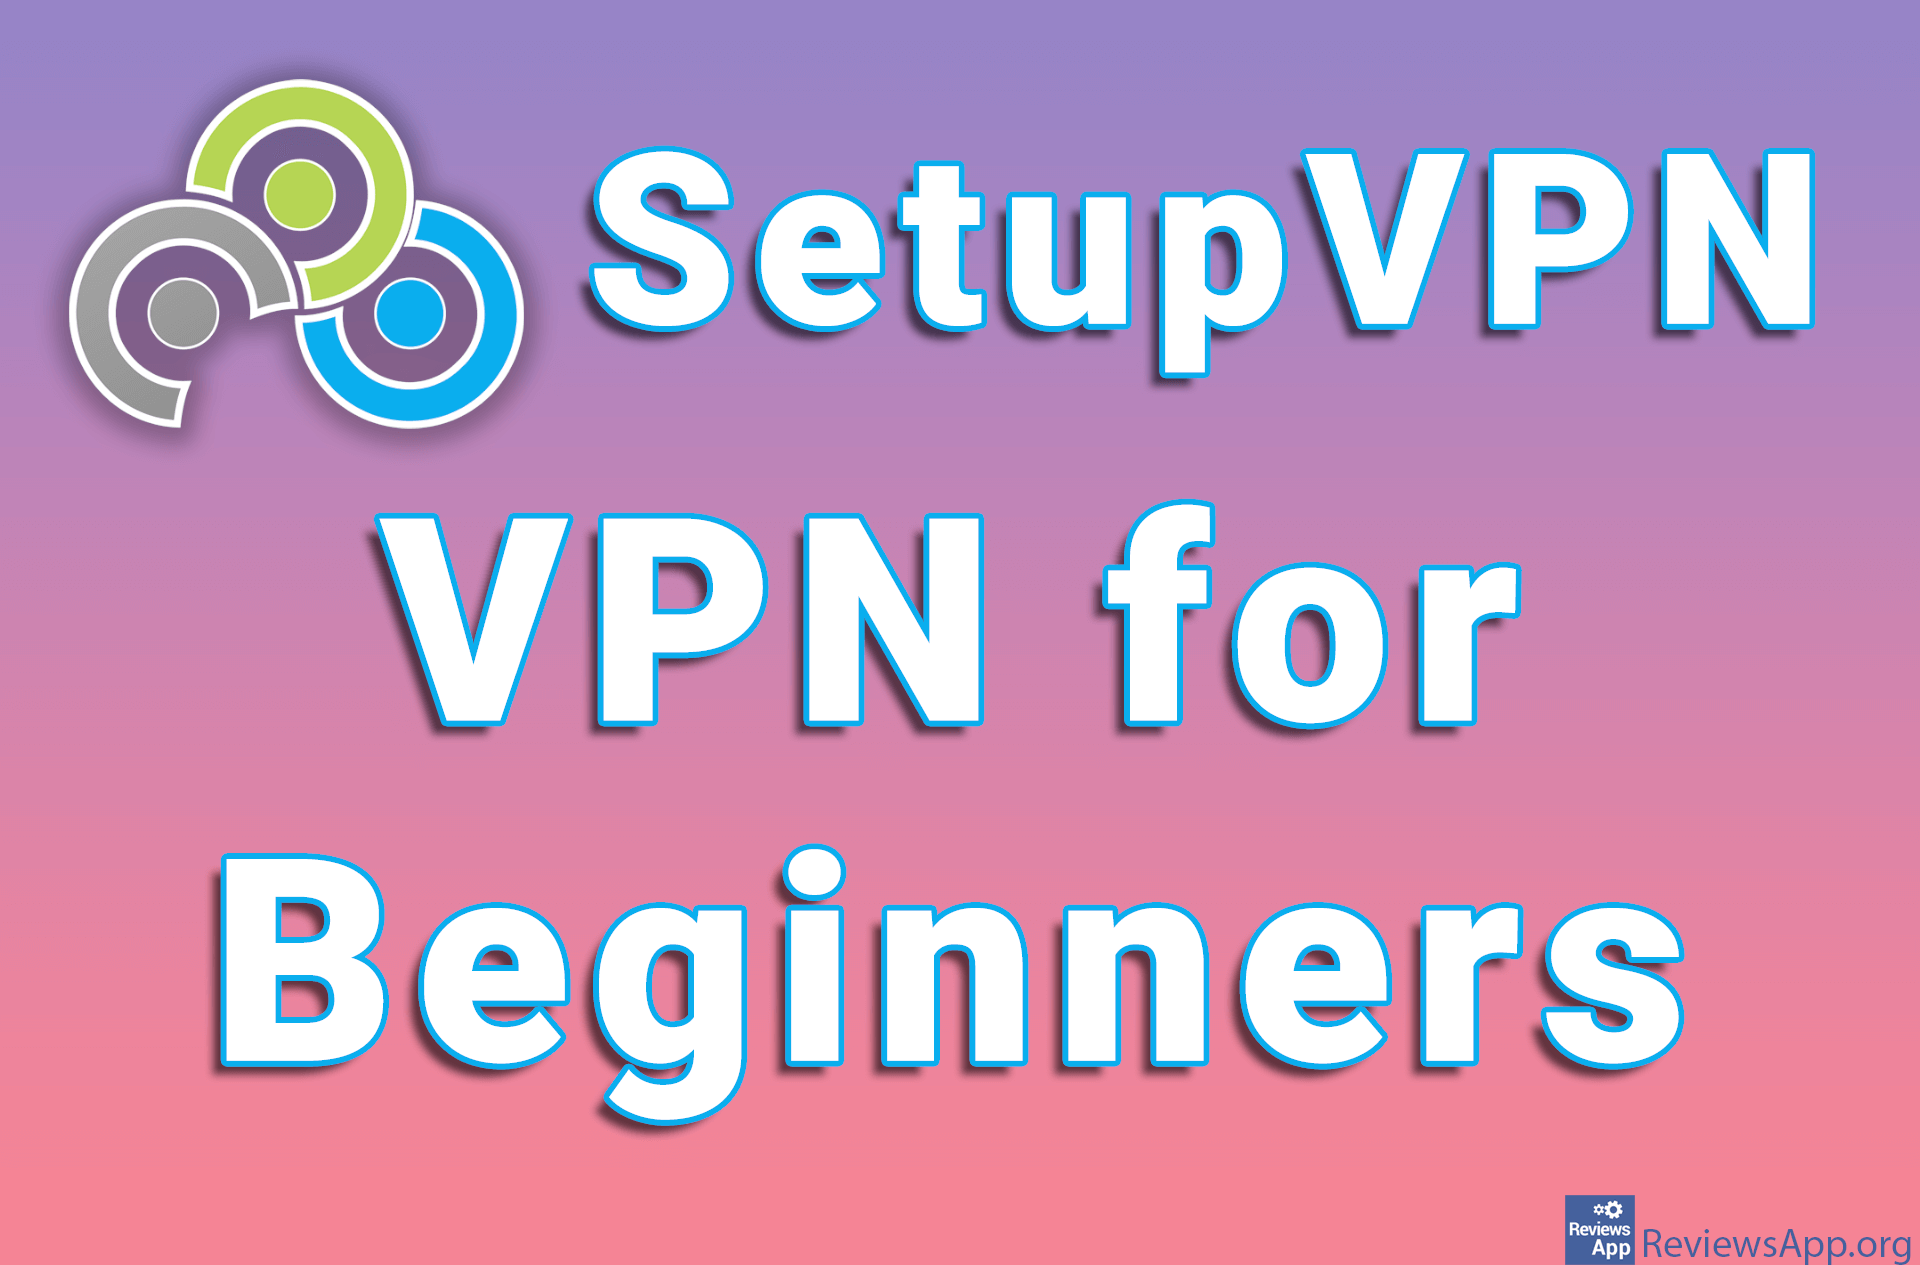 SetupVPN – VPN for Beginners